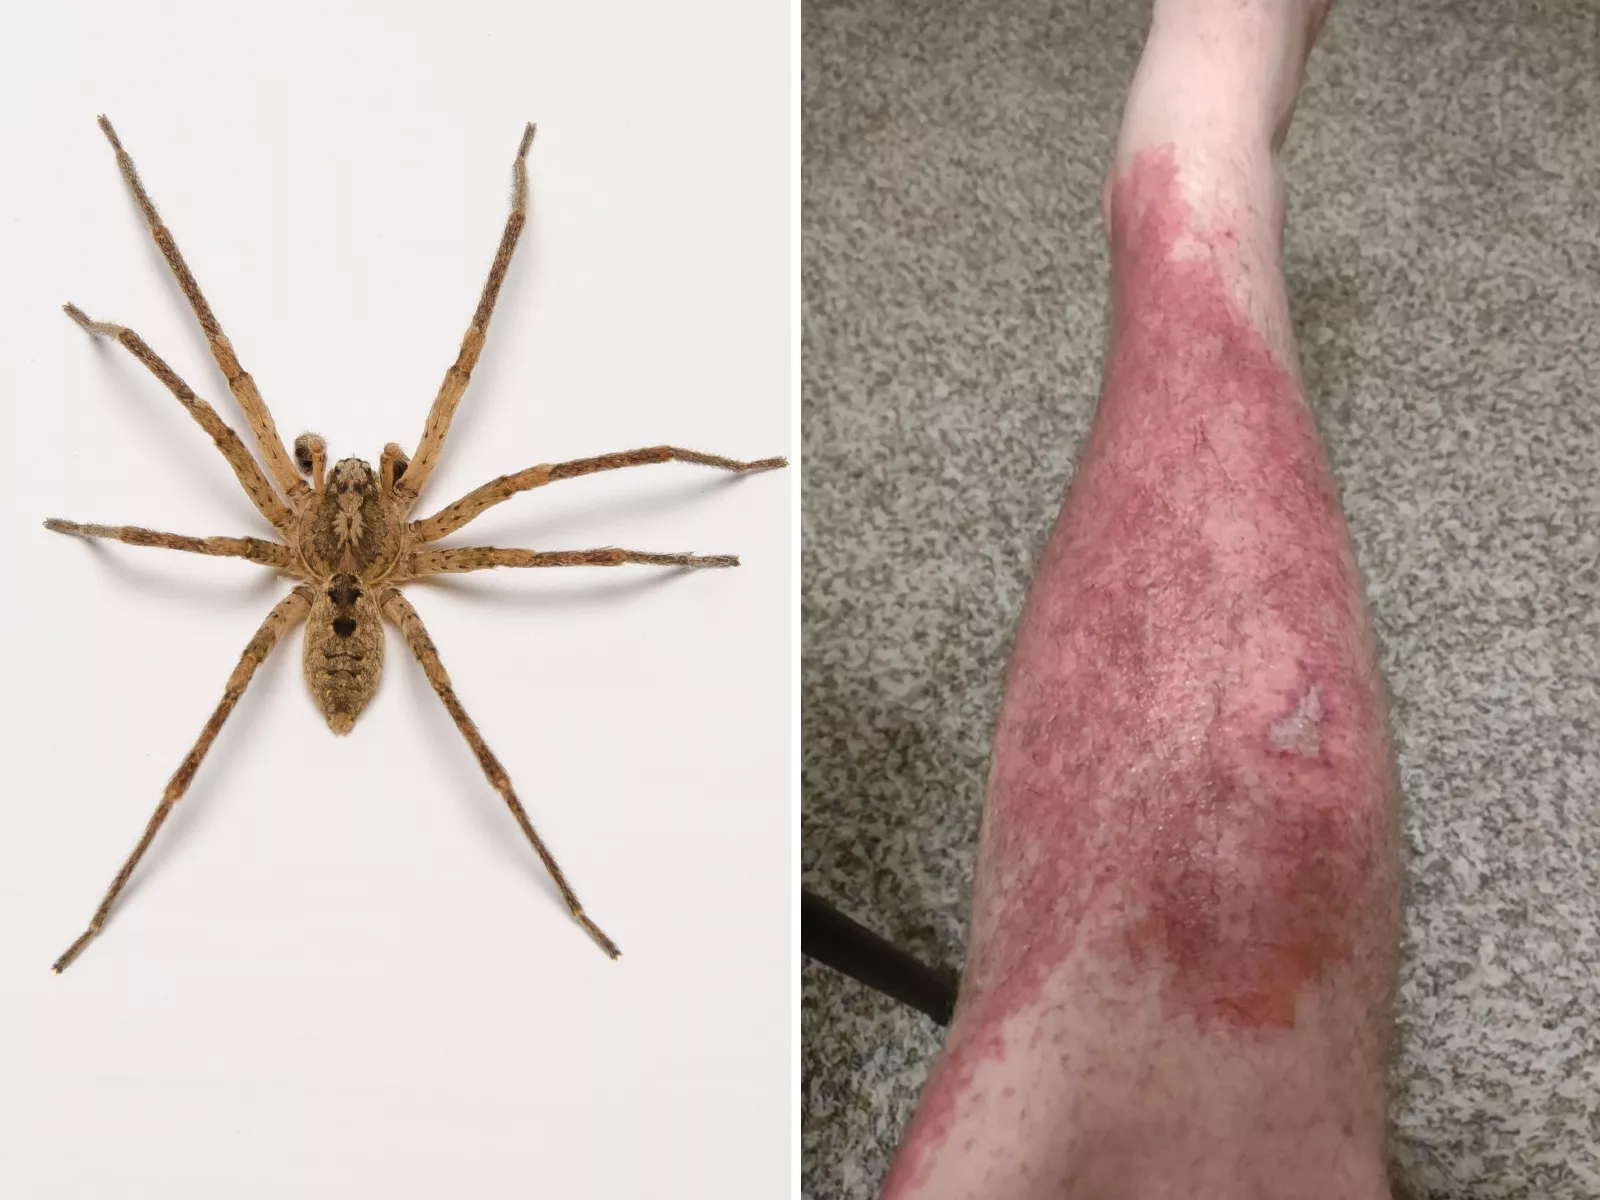 Vaccinere strøm kravle Man Bitten by Spider As He Slept Left in "Immense" Pain, Covered in Rash